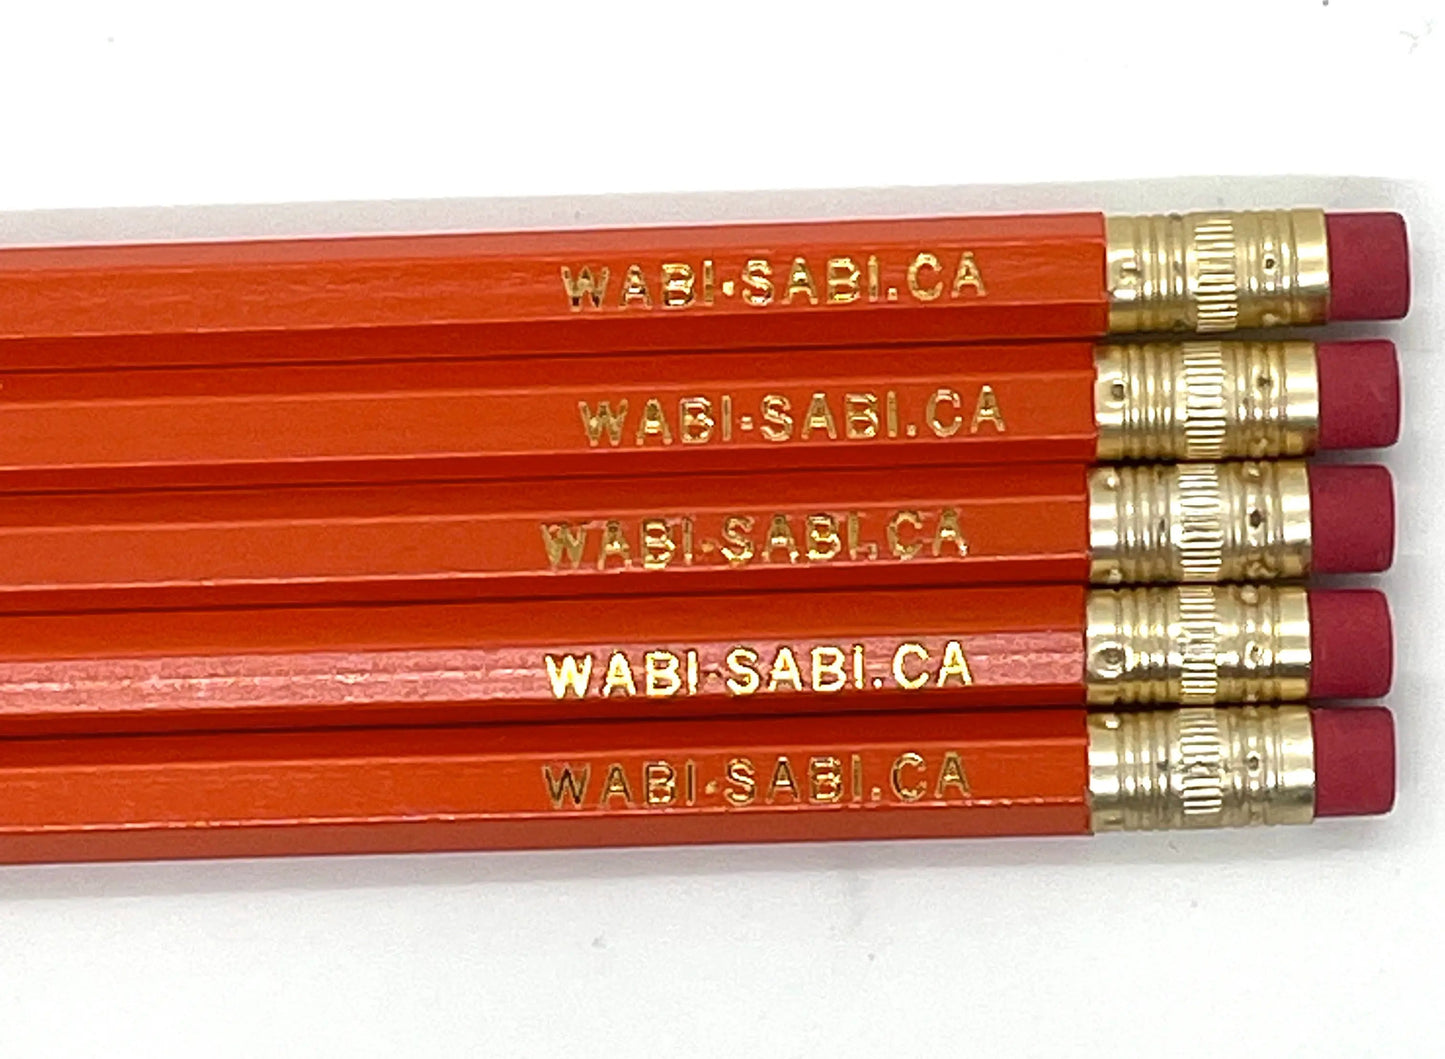 Crafty Pencils - wabi-sabi.ca at Wabi Sabi